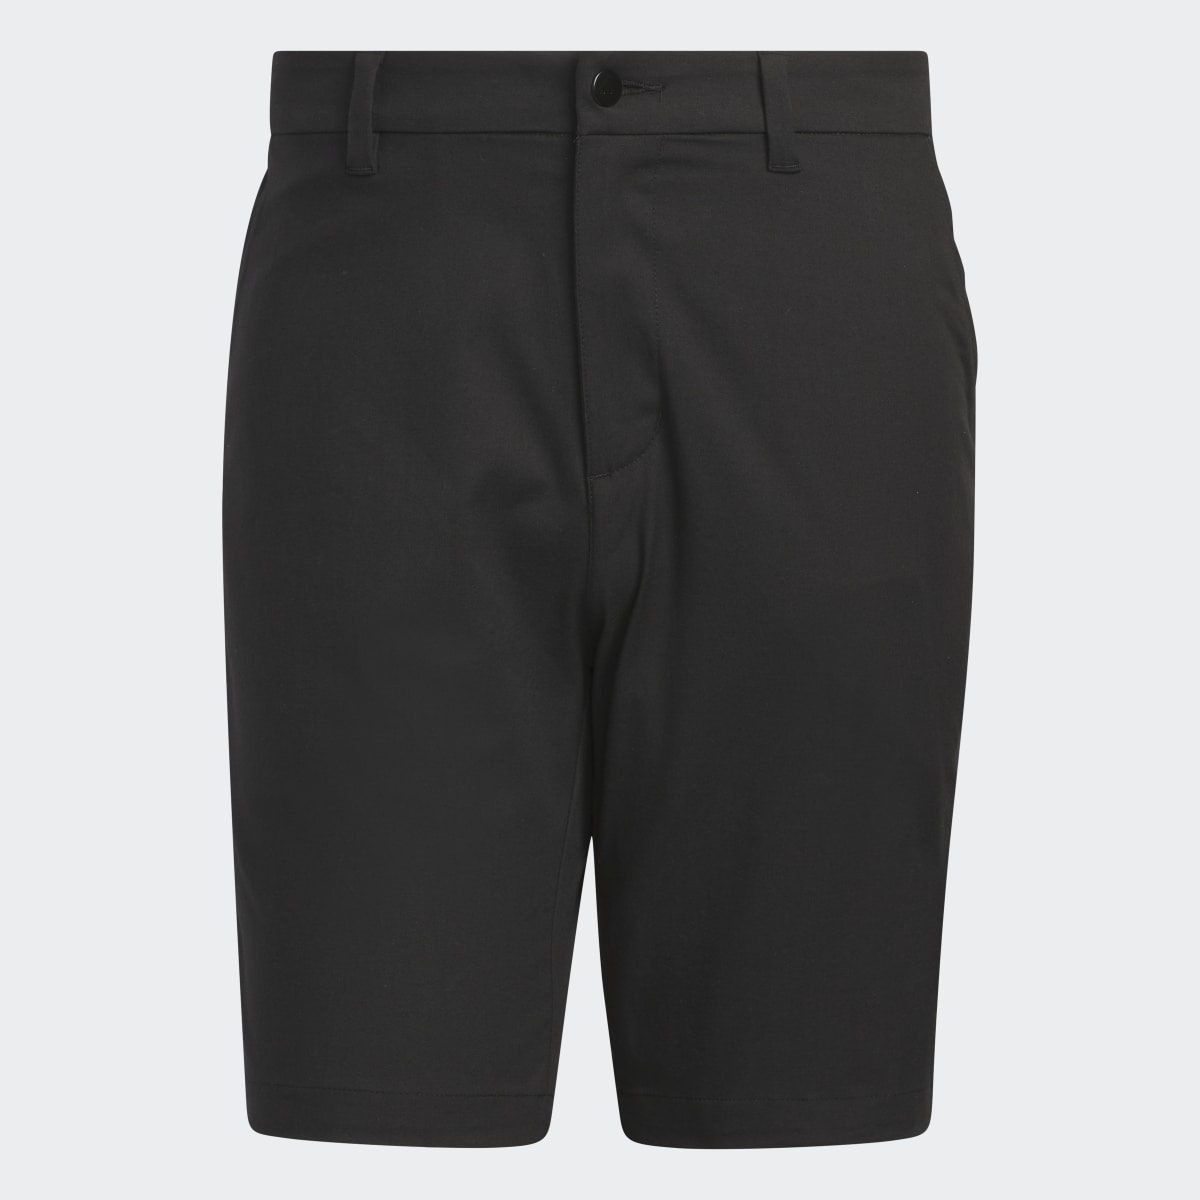 Adidas Go-To 9-Inch Golf Shorts. 4